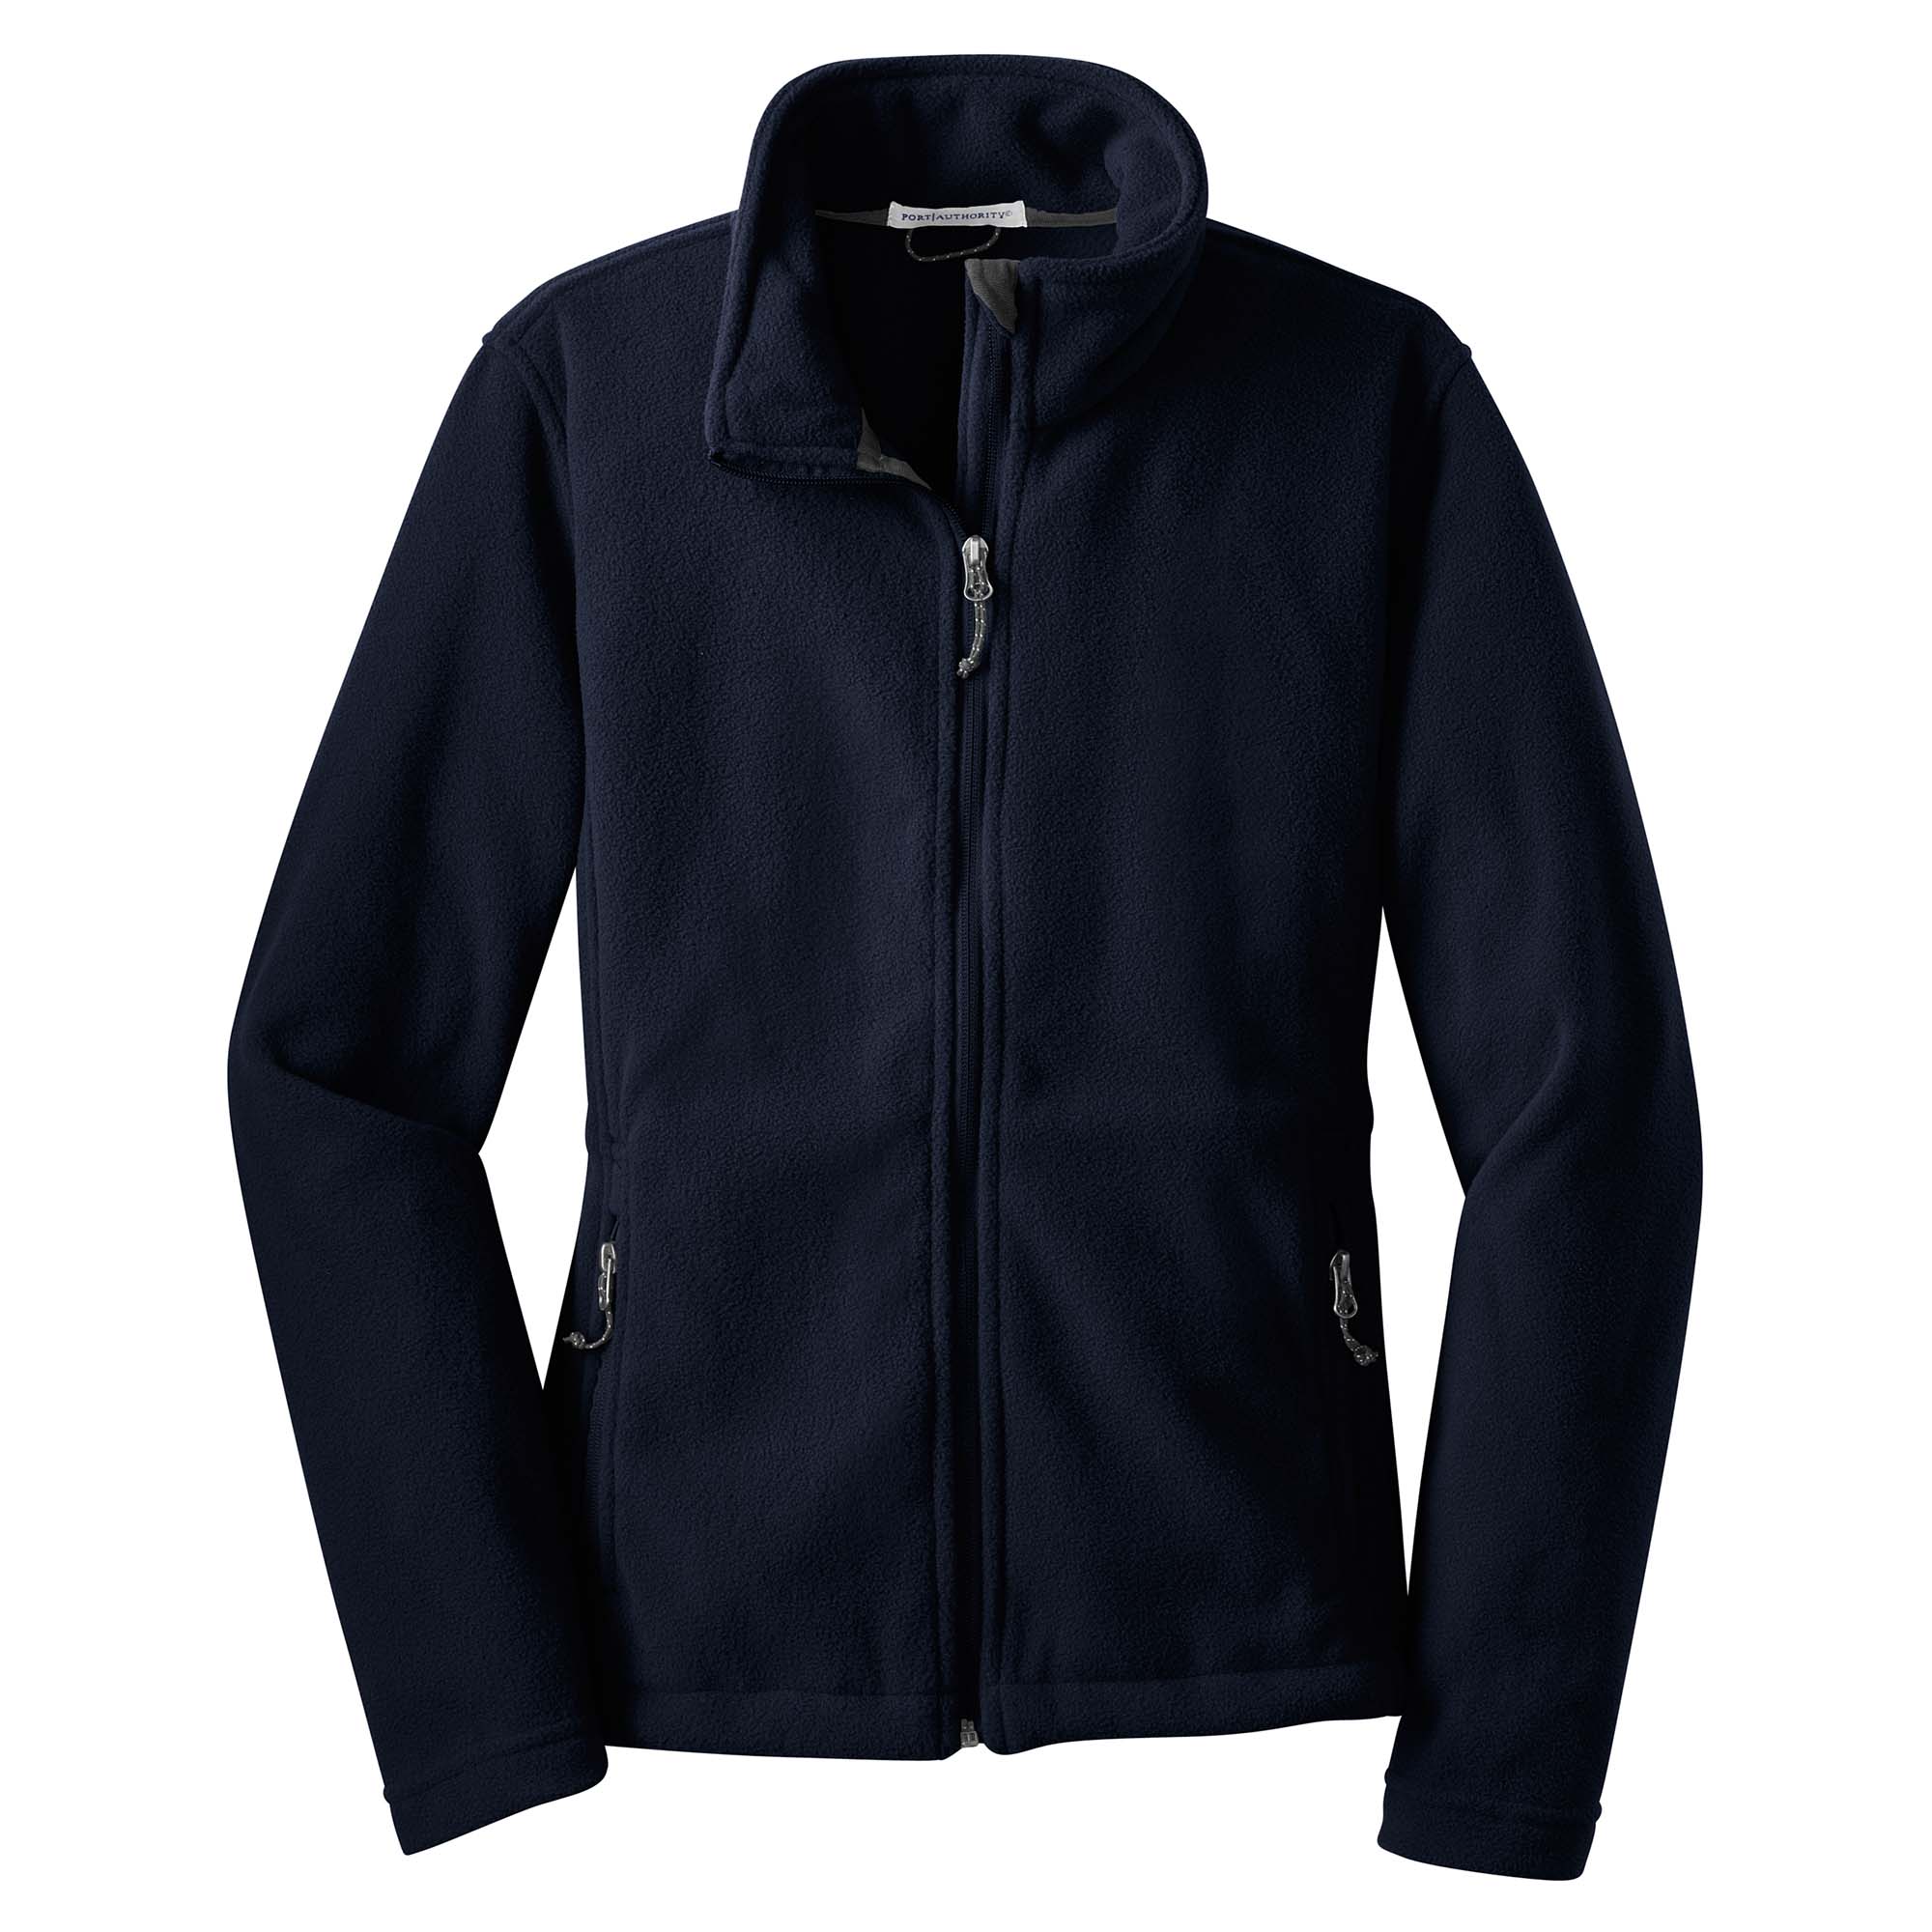 Port Authority L217 Ladies Value Fleece Jacket - True Navy | Full Source